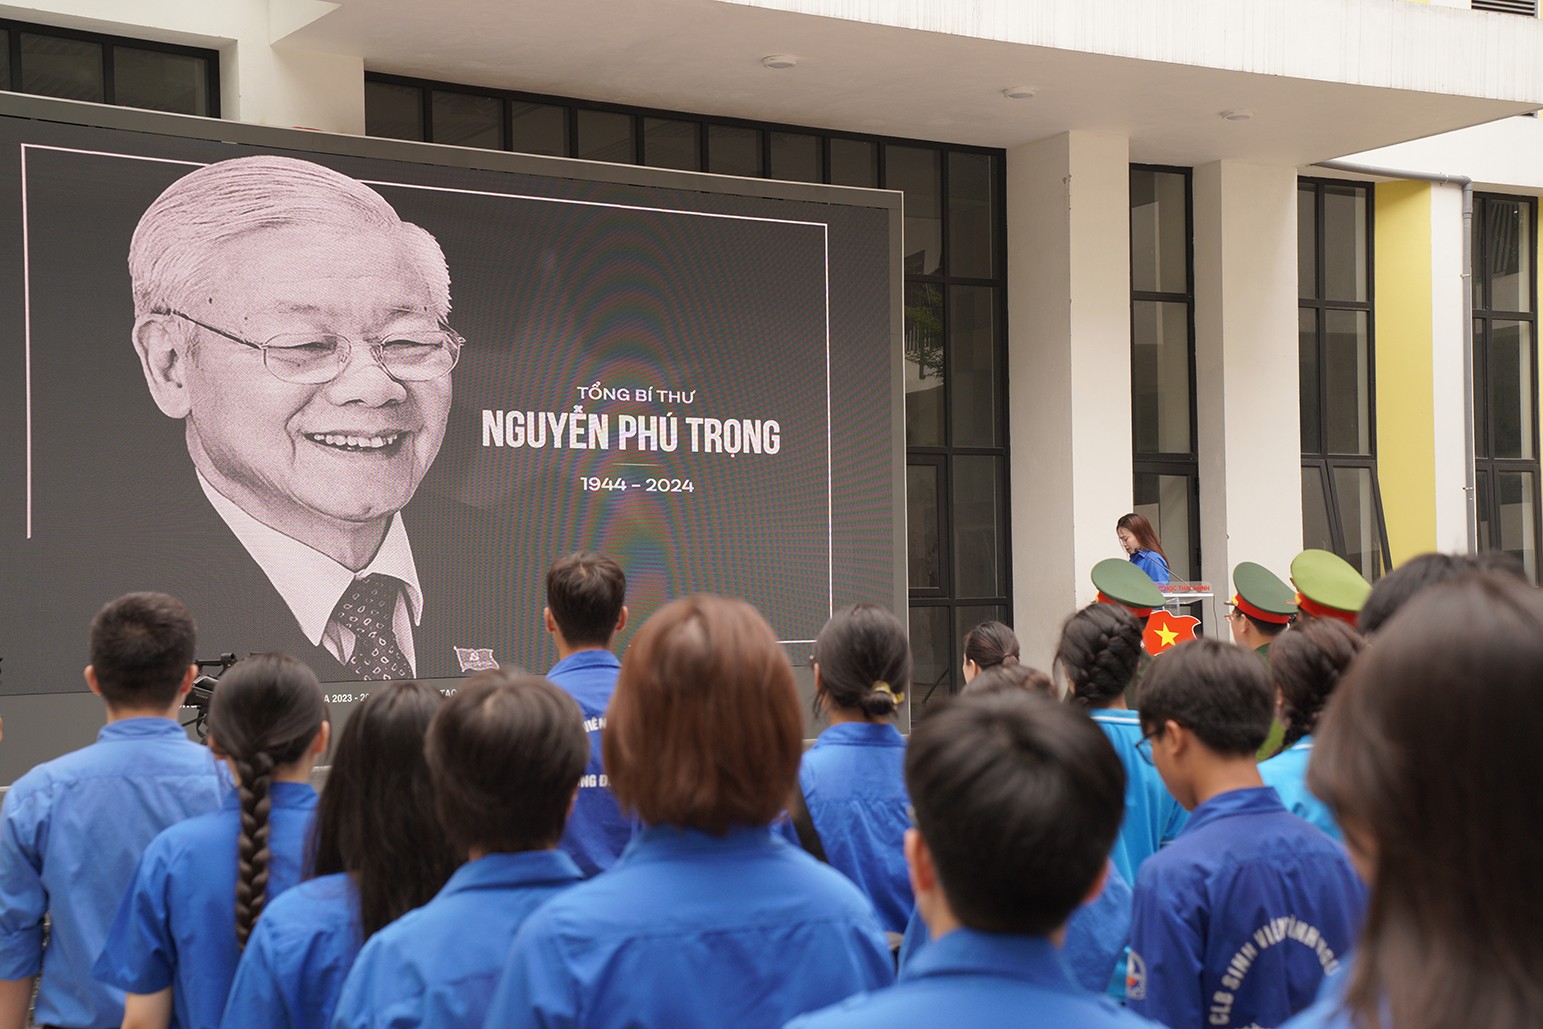 Các đại biểu tham dự đã dành phút mặc niệm để tưởng nhớ tới cố Tổng Bí thư Nguyễn Phú Trọng